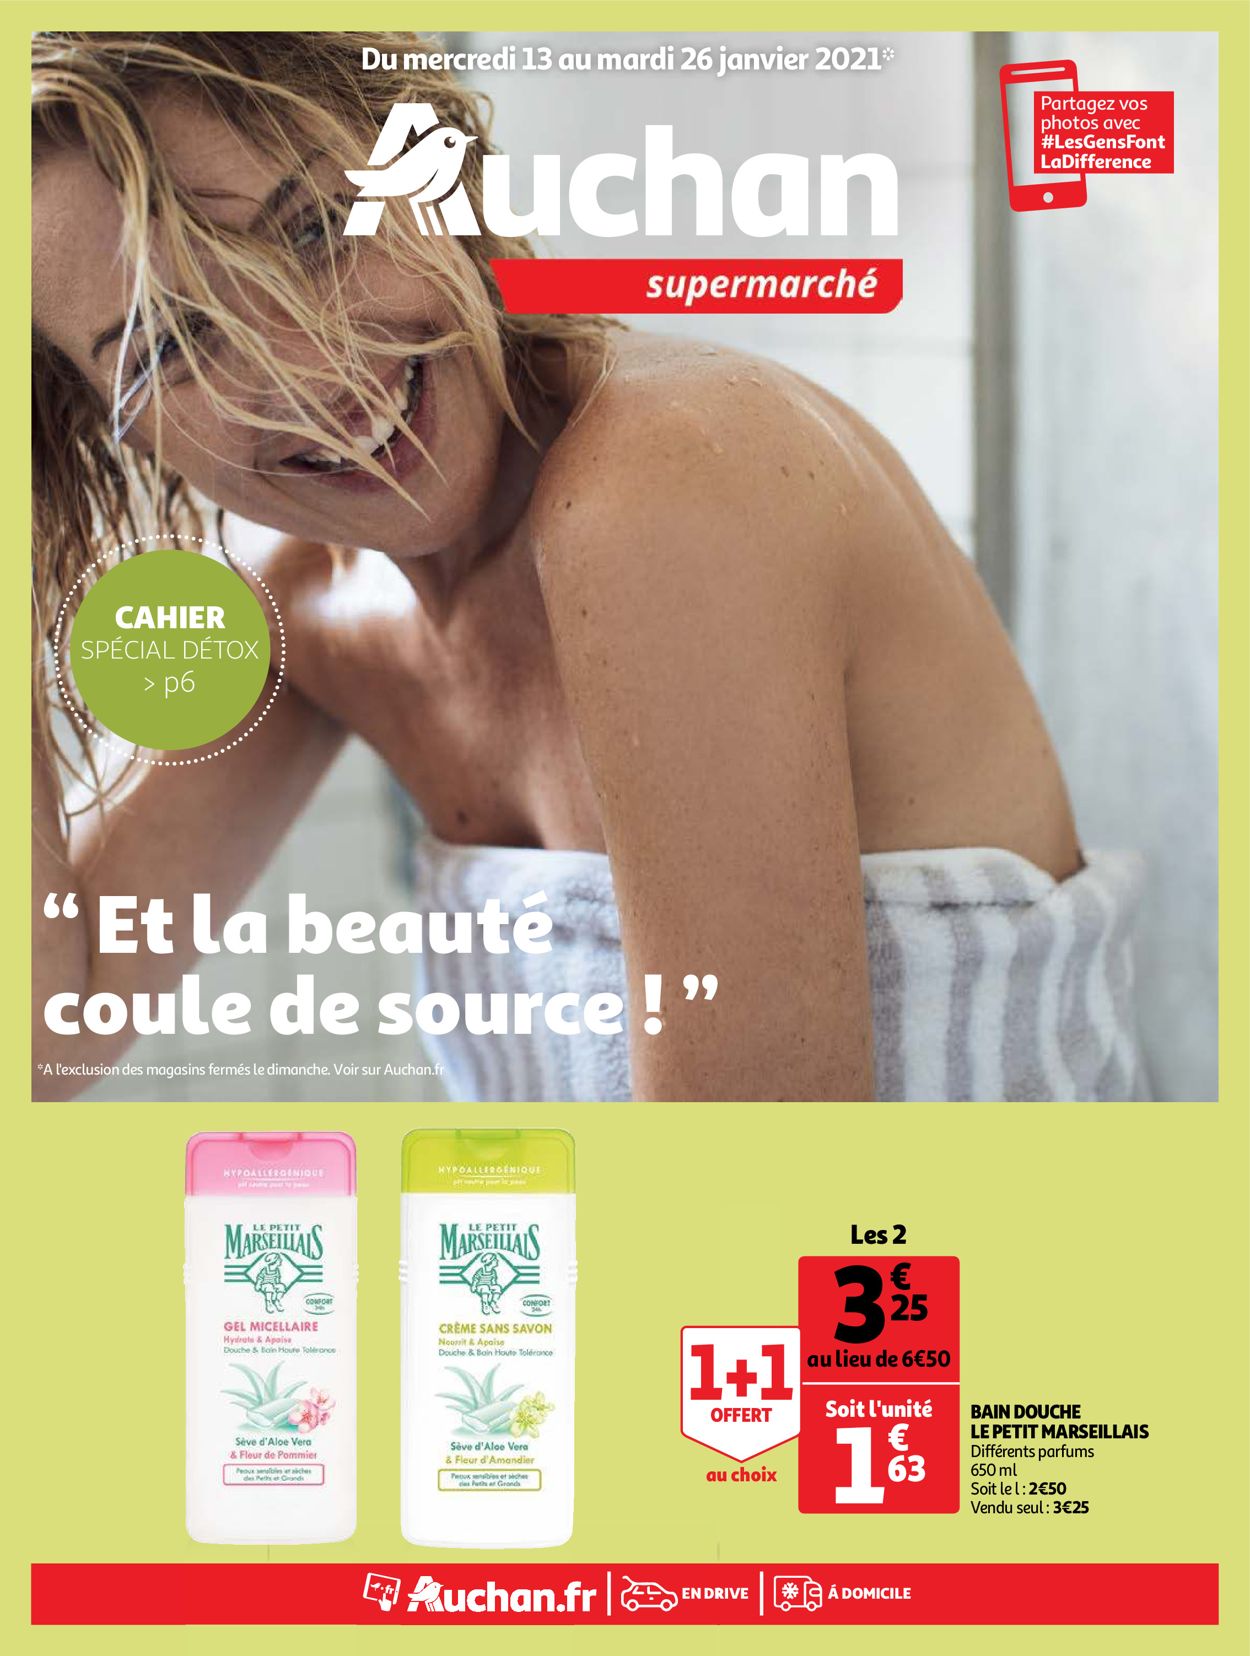 Auchan Special Soin et Detox 2021 Catalogue - 13.01-26.01.2021